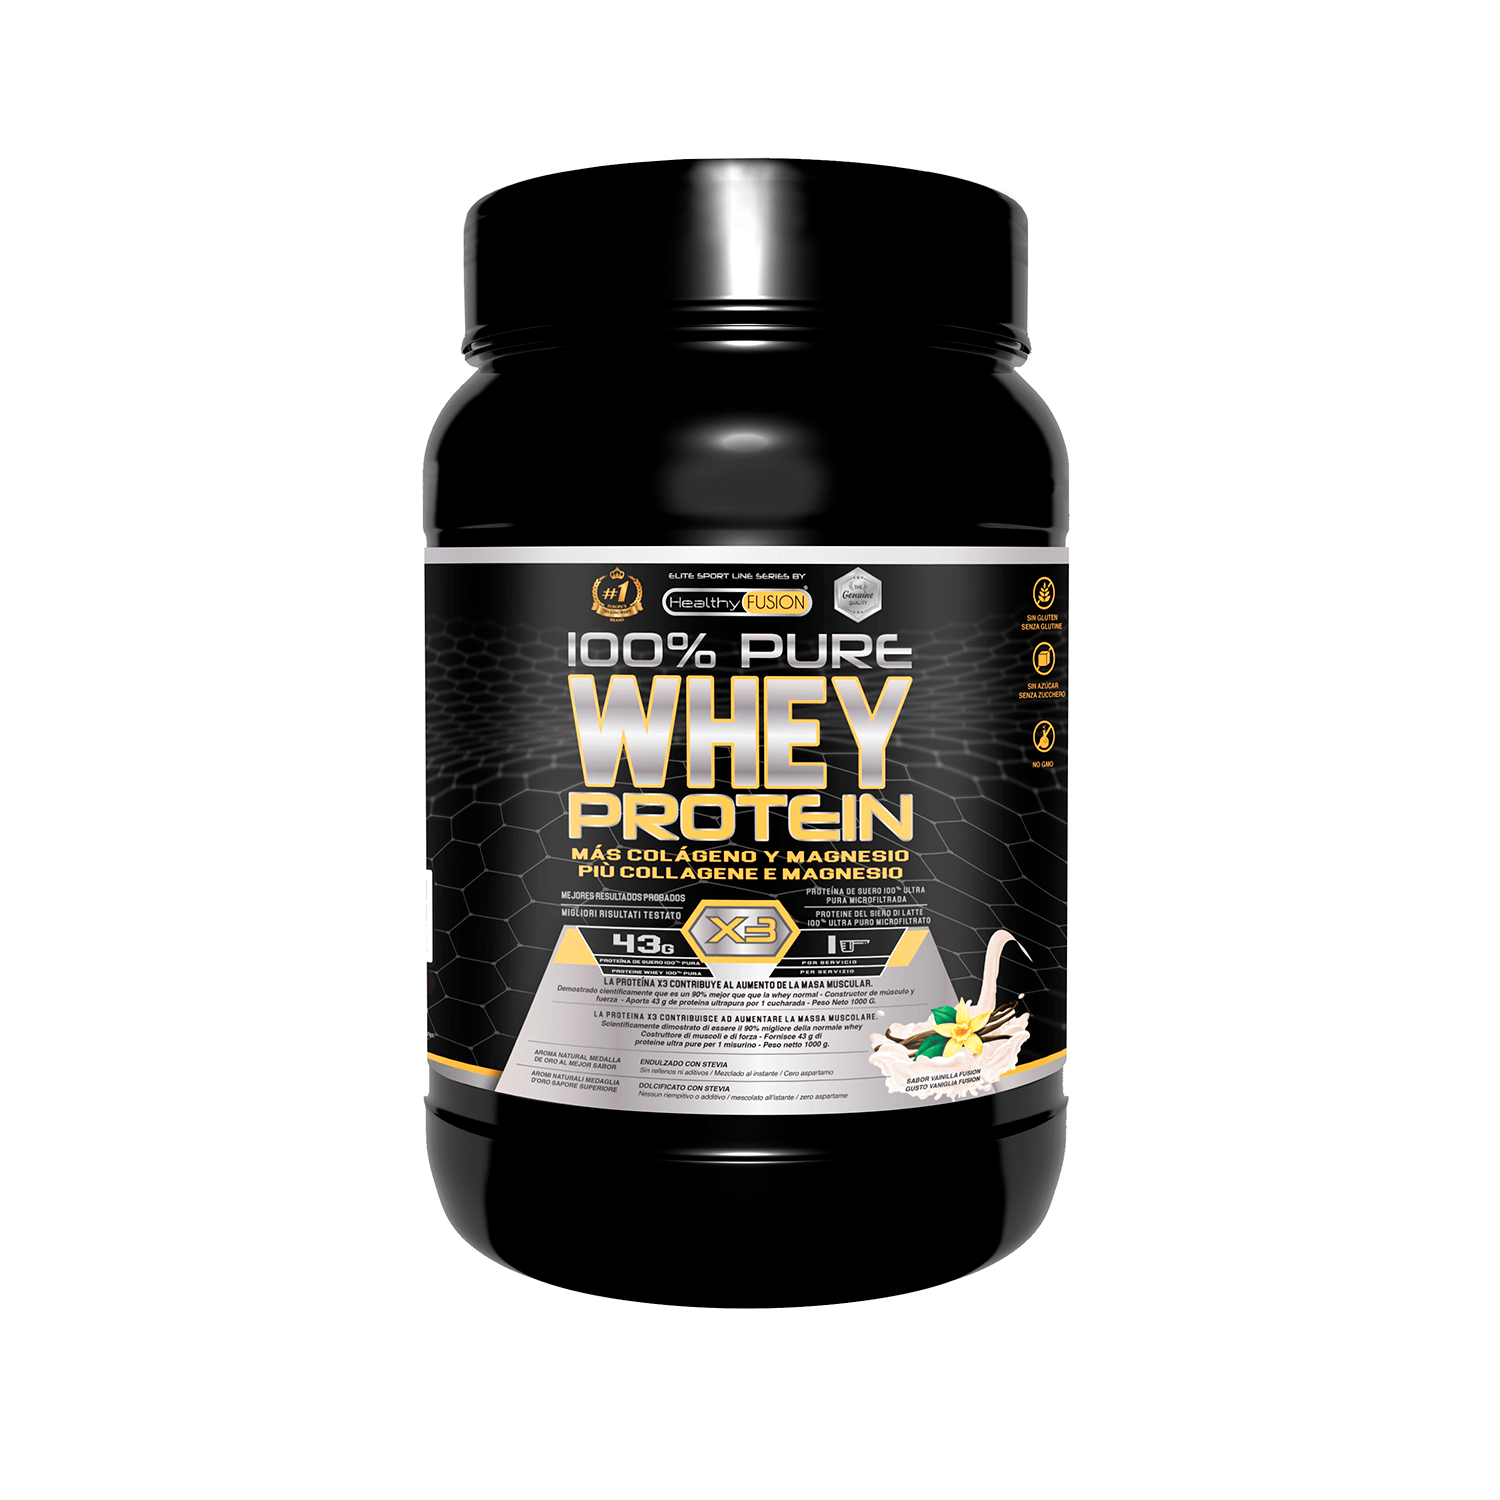 CONPROTEINAS | Mejora tus entrenamientos con 100% Pure Whey Protein X3, la mejor proteína de suero del mercado